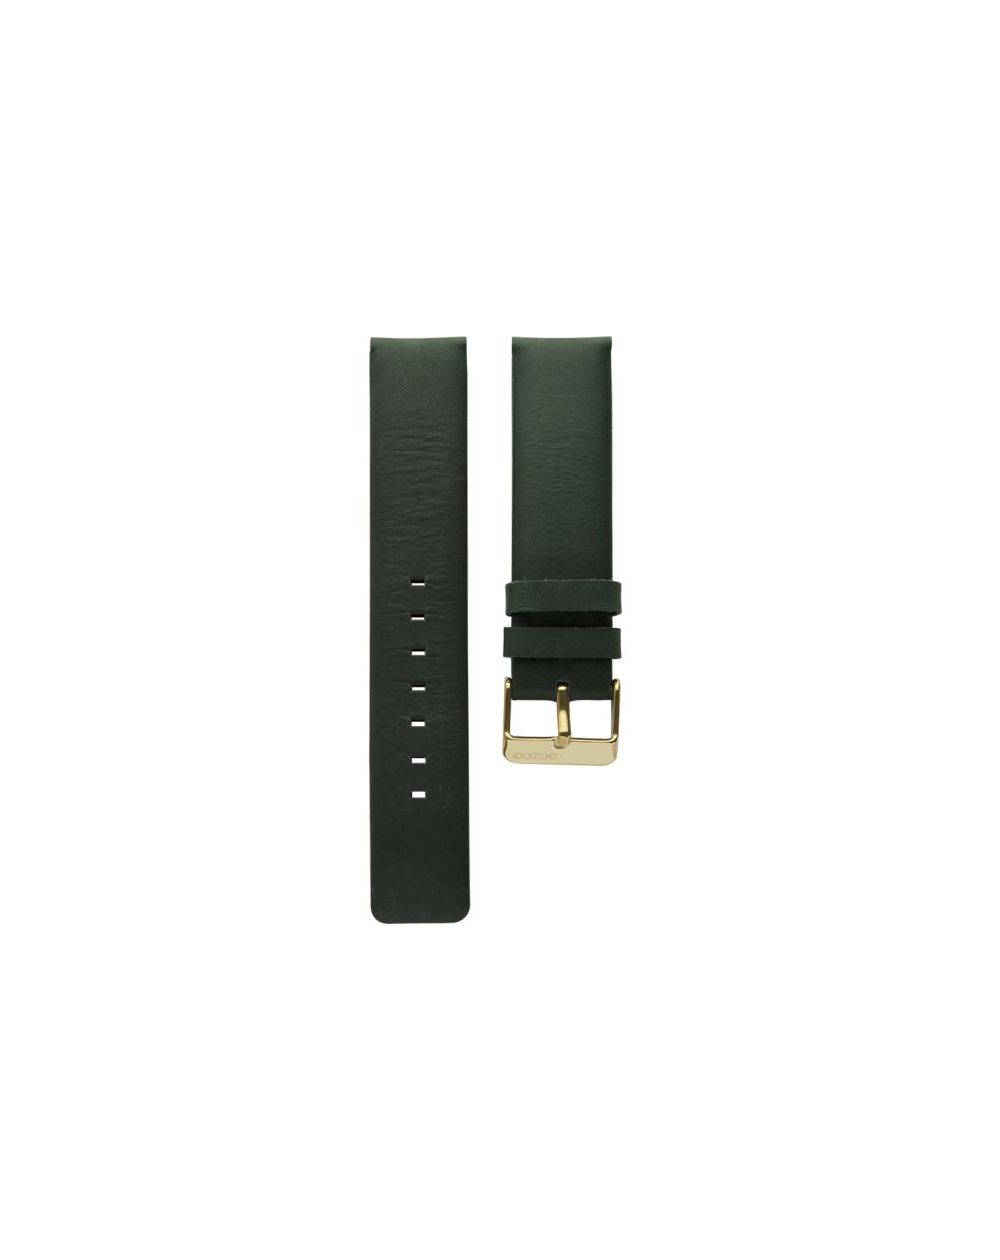 20.20 - green 20 mm. - Bracelet pour montre Oozoo